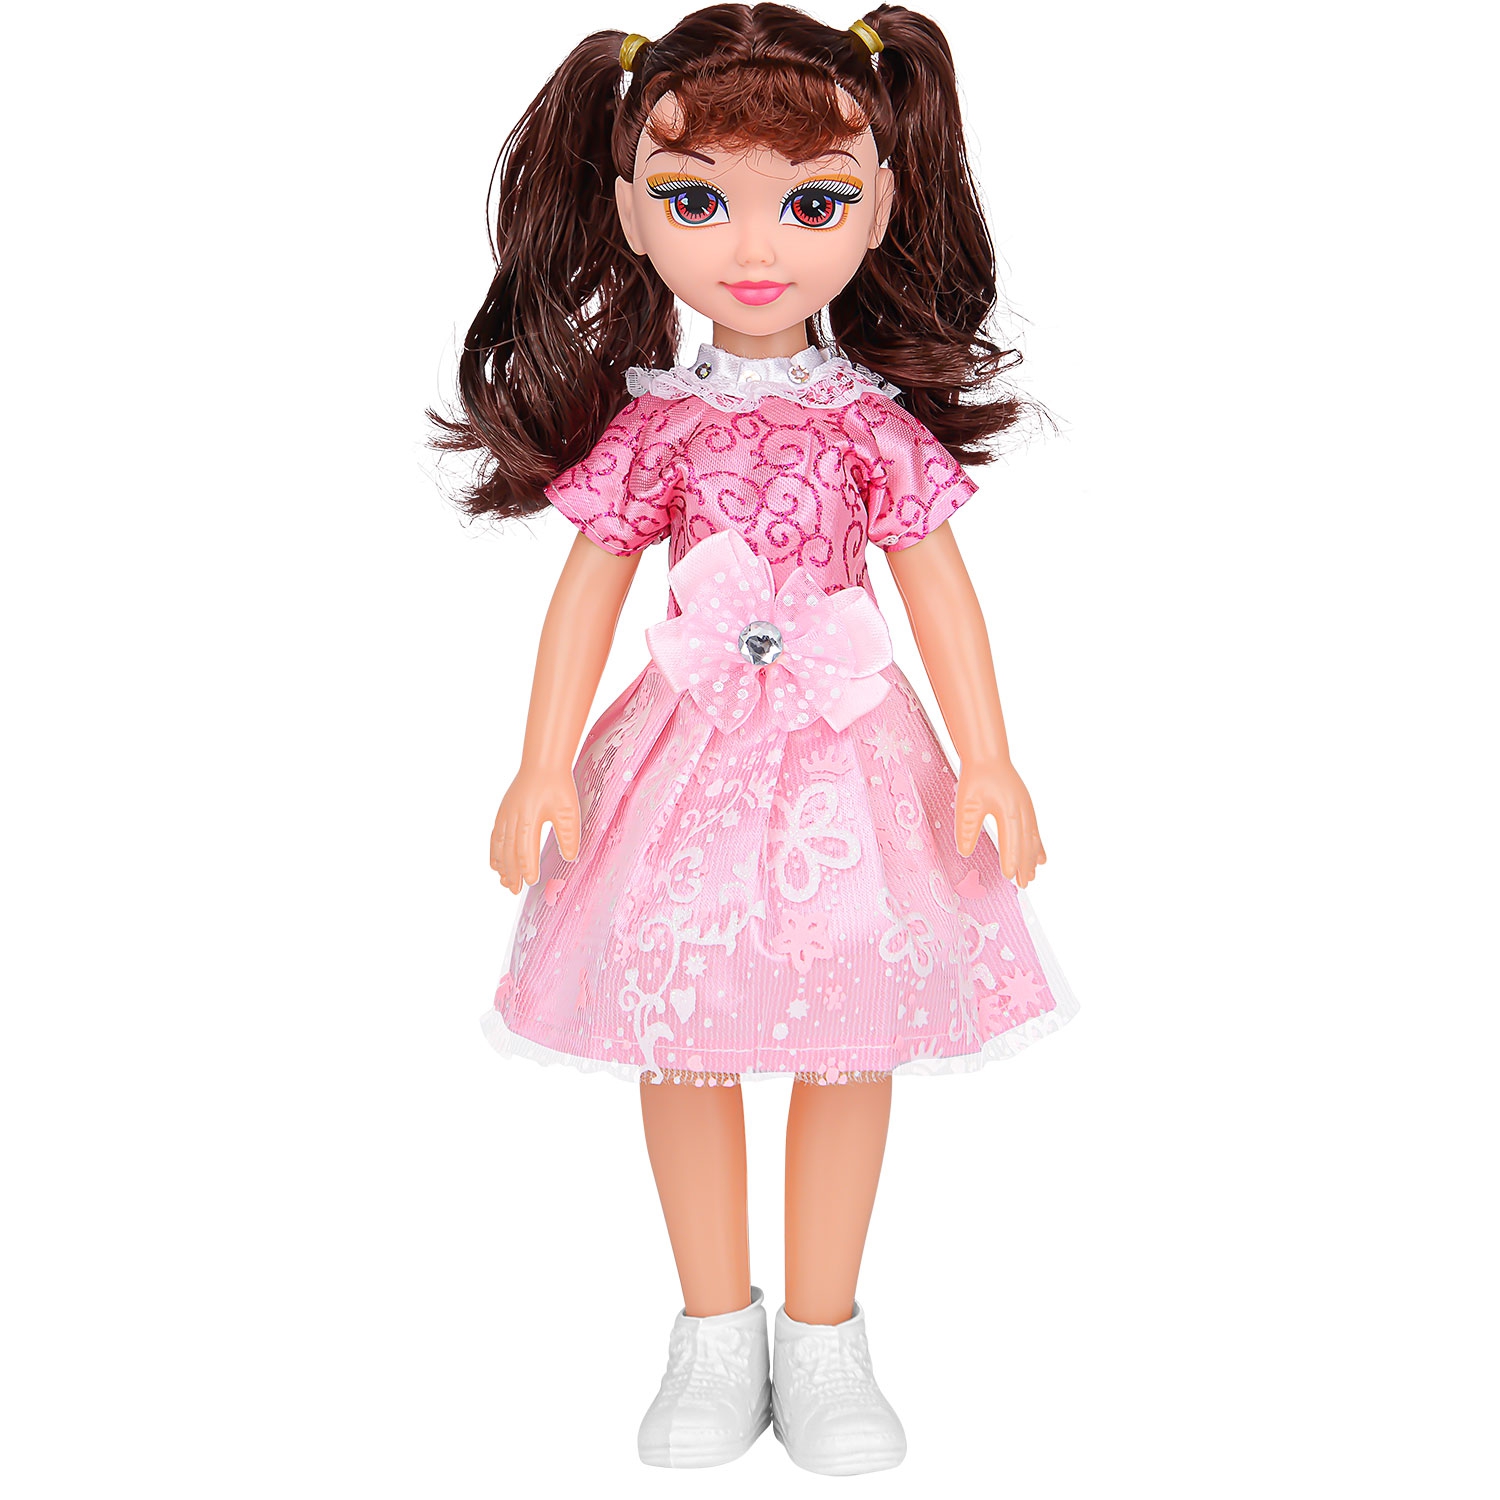 Кукла Reese Cute Поющая девочка, 32 см, Поёт весёлую песенку на английском языке. Нажмите на спину куклы, чтобы послушать песню! Внимание! Требуется 3 батарейки типа AG13 (HP1145379)